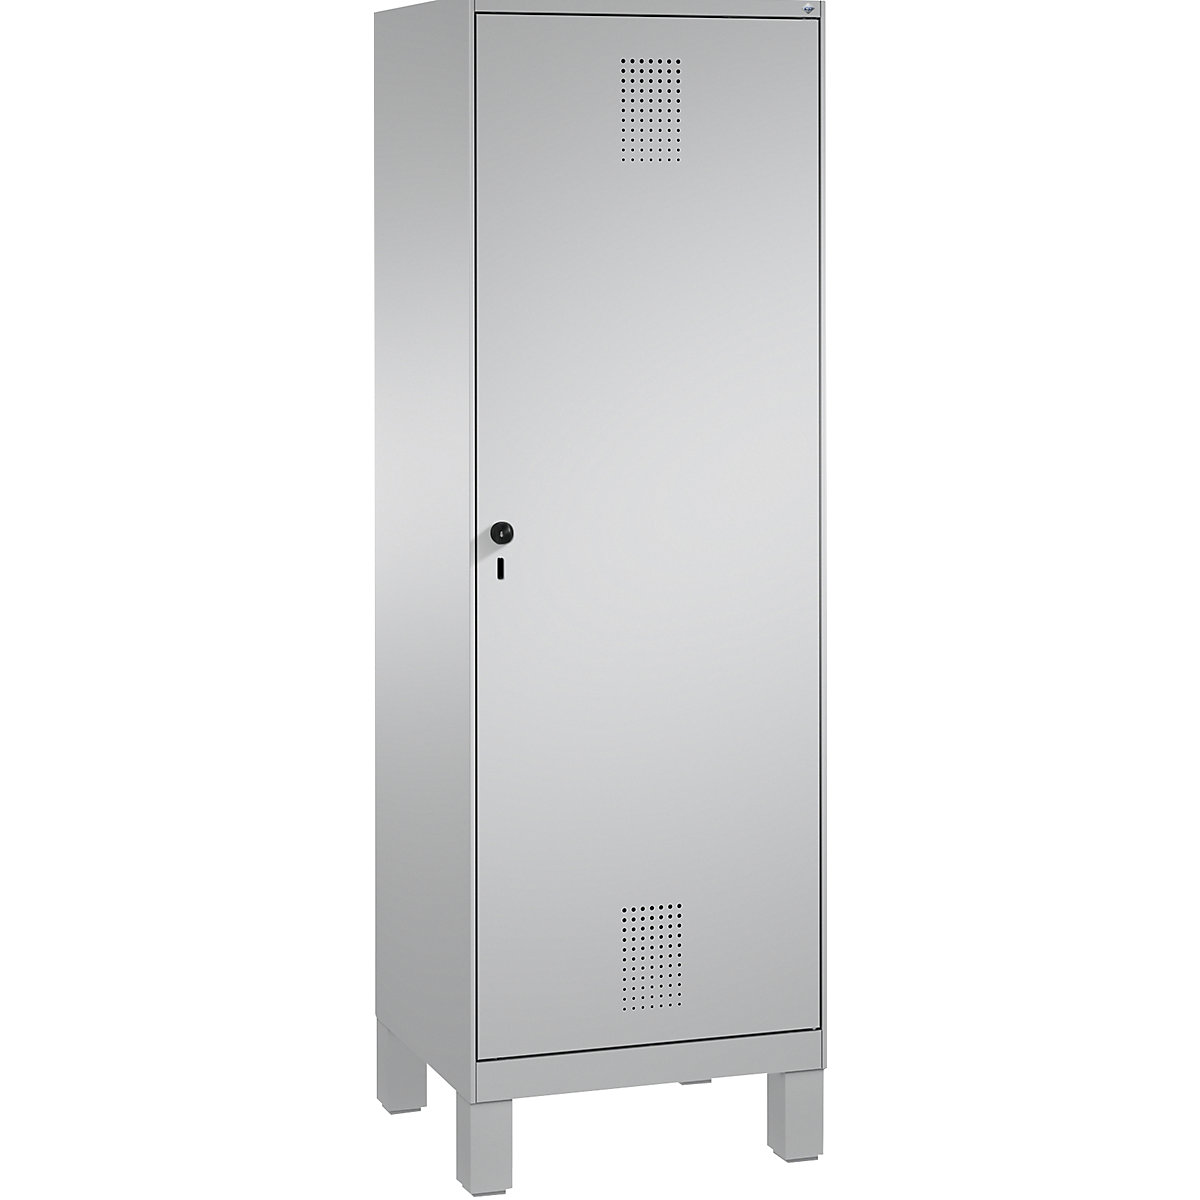 Šatní skříň s nohami EVOLO s dveřmi přes 2 oddíly – C+P, 2 oddíly, 1 dveře, šířka oddílu 300 mm, bílý hliník / bílý hliník-2